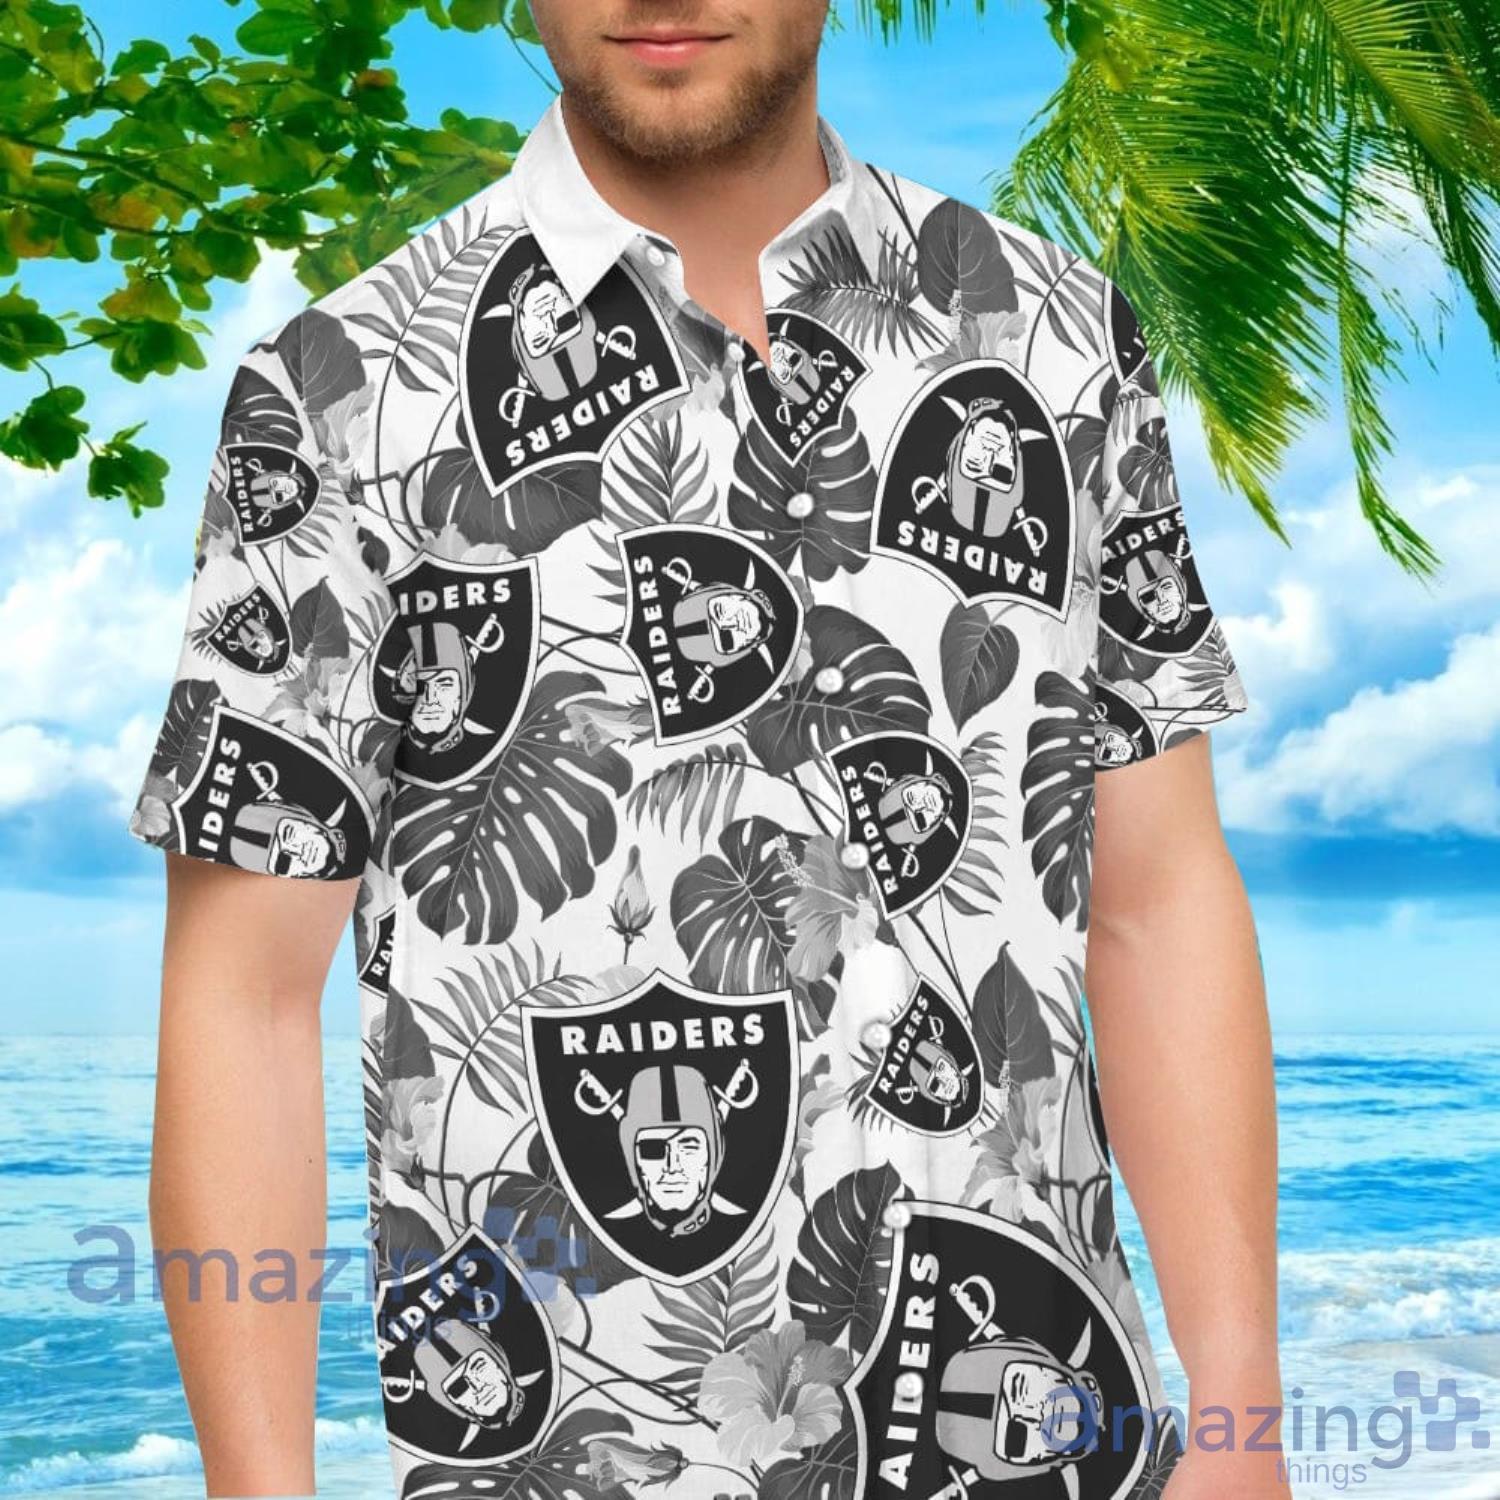 Las Vegas Raiders Hawaiian Shirt For Men